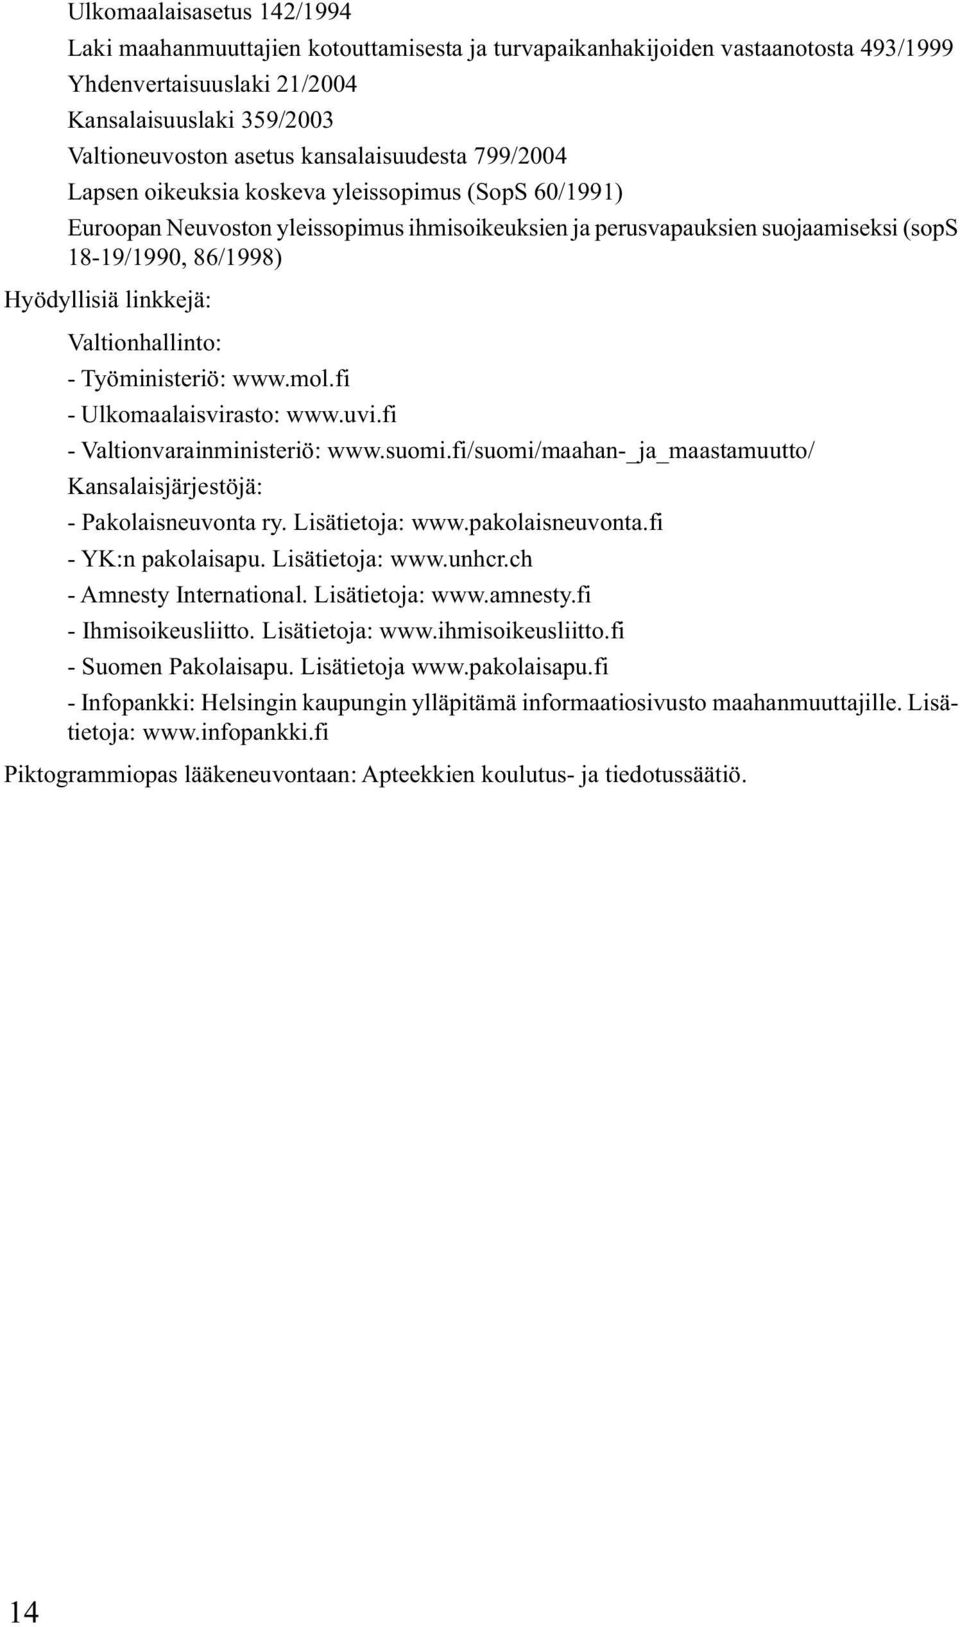 linkkejä: Valtionhallinto: - Työministeriö: www.mol.fi - Ulkomaalaisvirasto: www.uvi.fi - Valtionvarainministeriö: www.suomi.